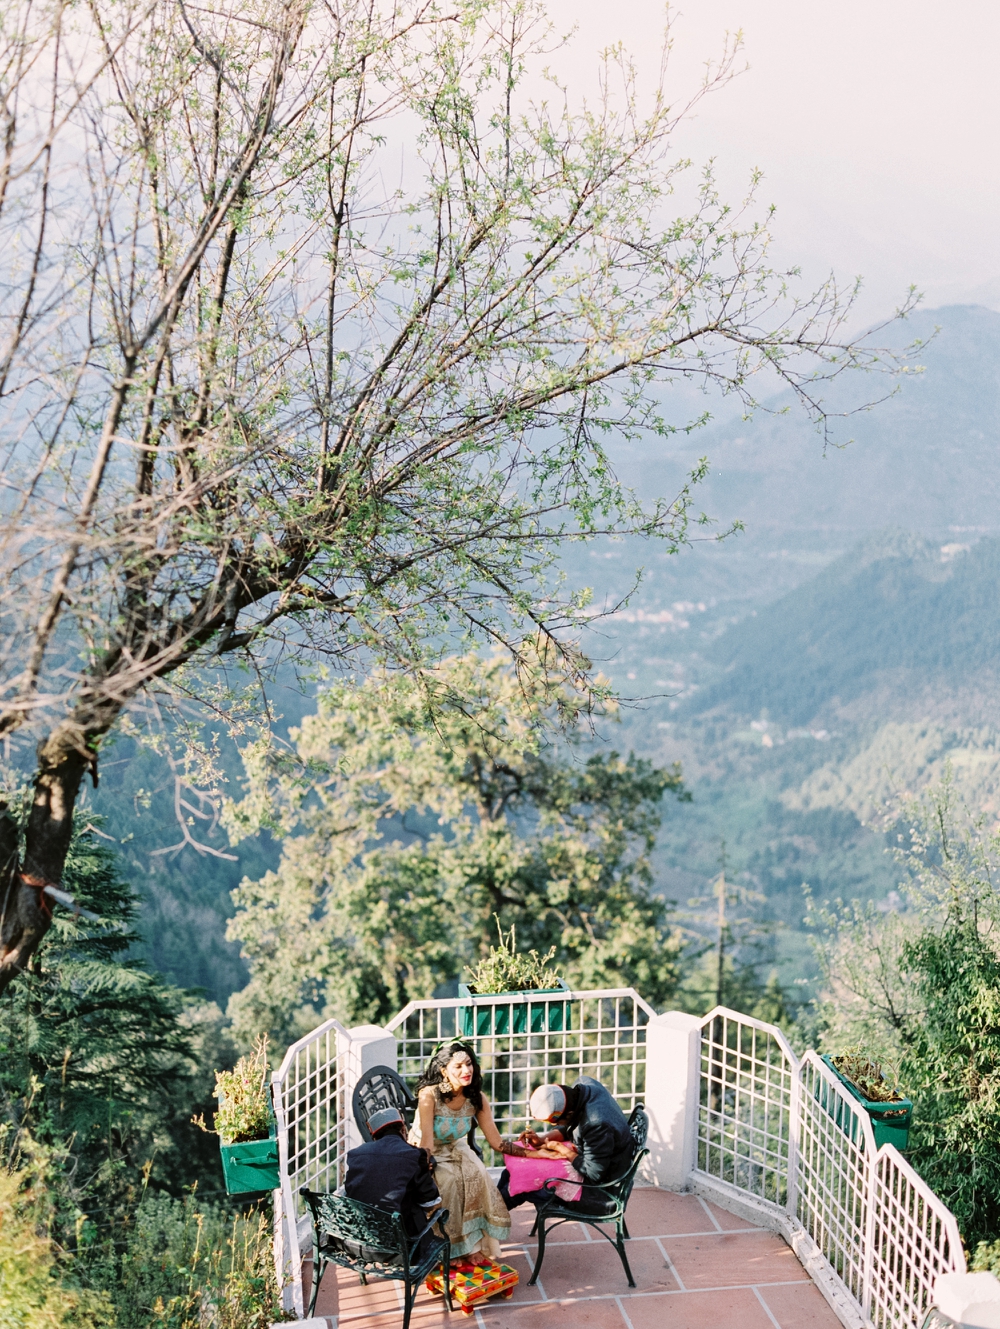 India wedding photographer | Mehndi | Henna | East Indian Wedding | Mountain Wedding Photographers